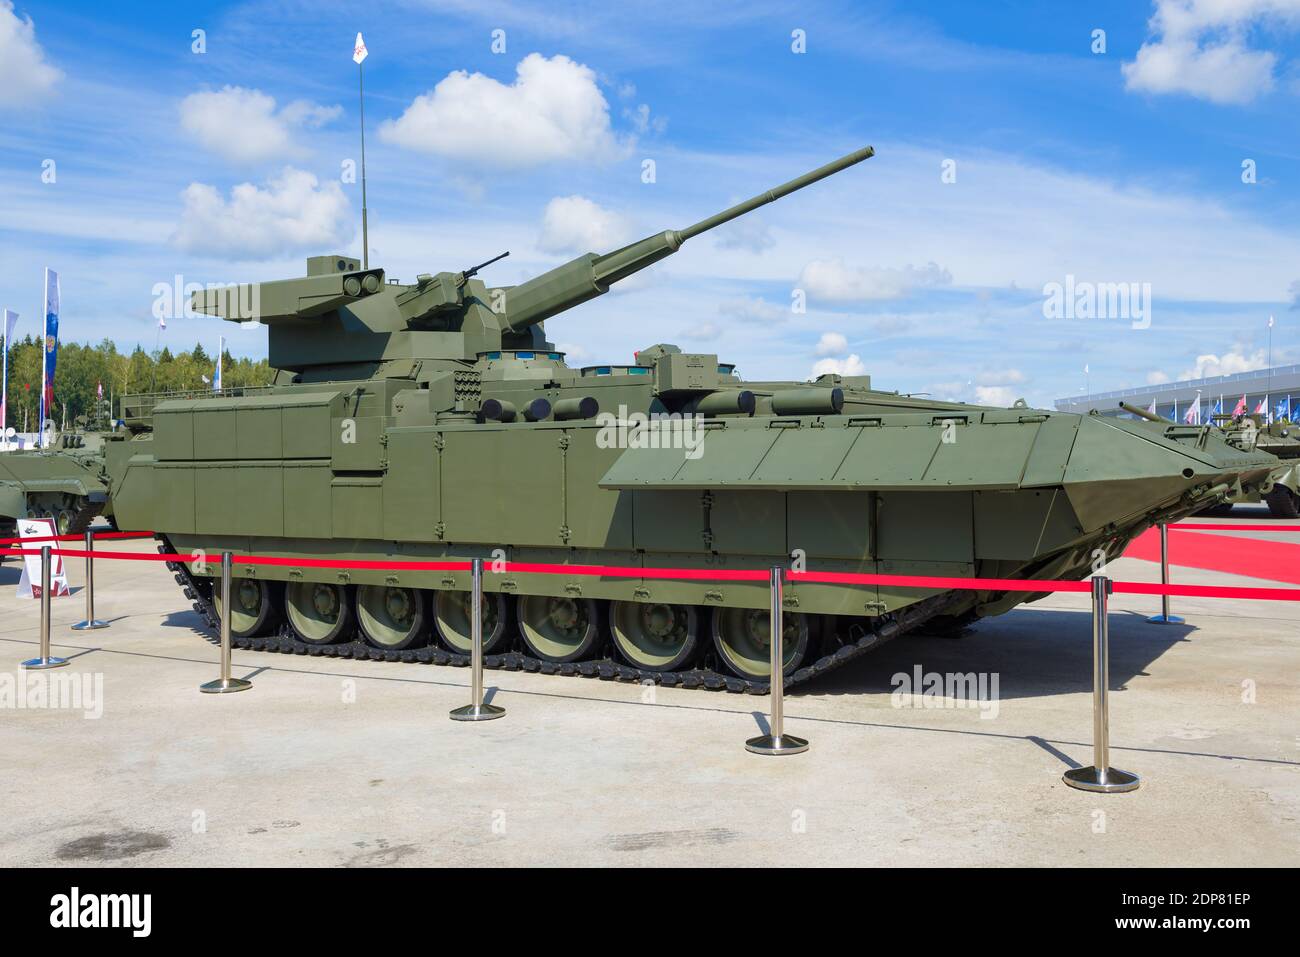 REGIONE DI MOSCA, RUSSIA - 25 AGOSTO 2020: Vista laterale del veicolo da combattimento di fanteria 'Armata' T-15 con il modulo di combattimento 'dagger'. Parco Patriot Foto Stock